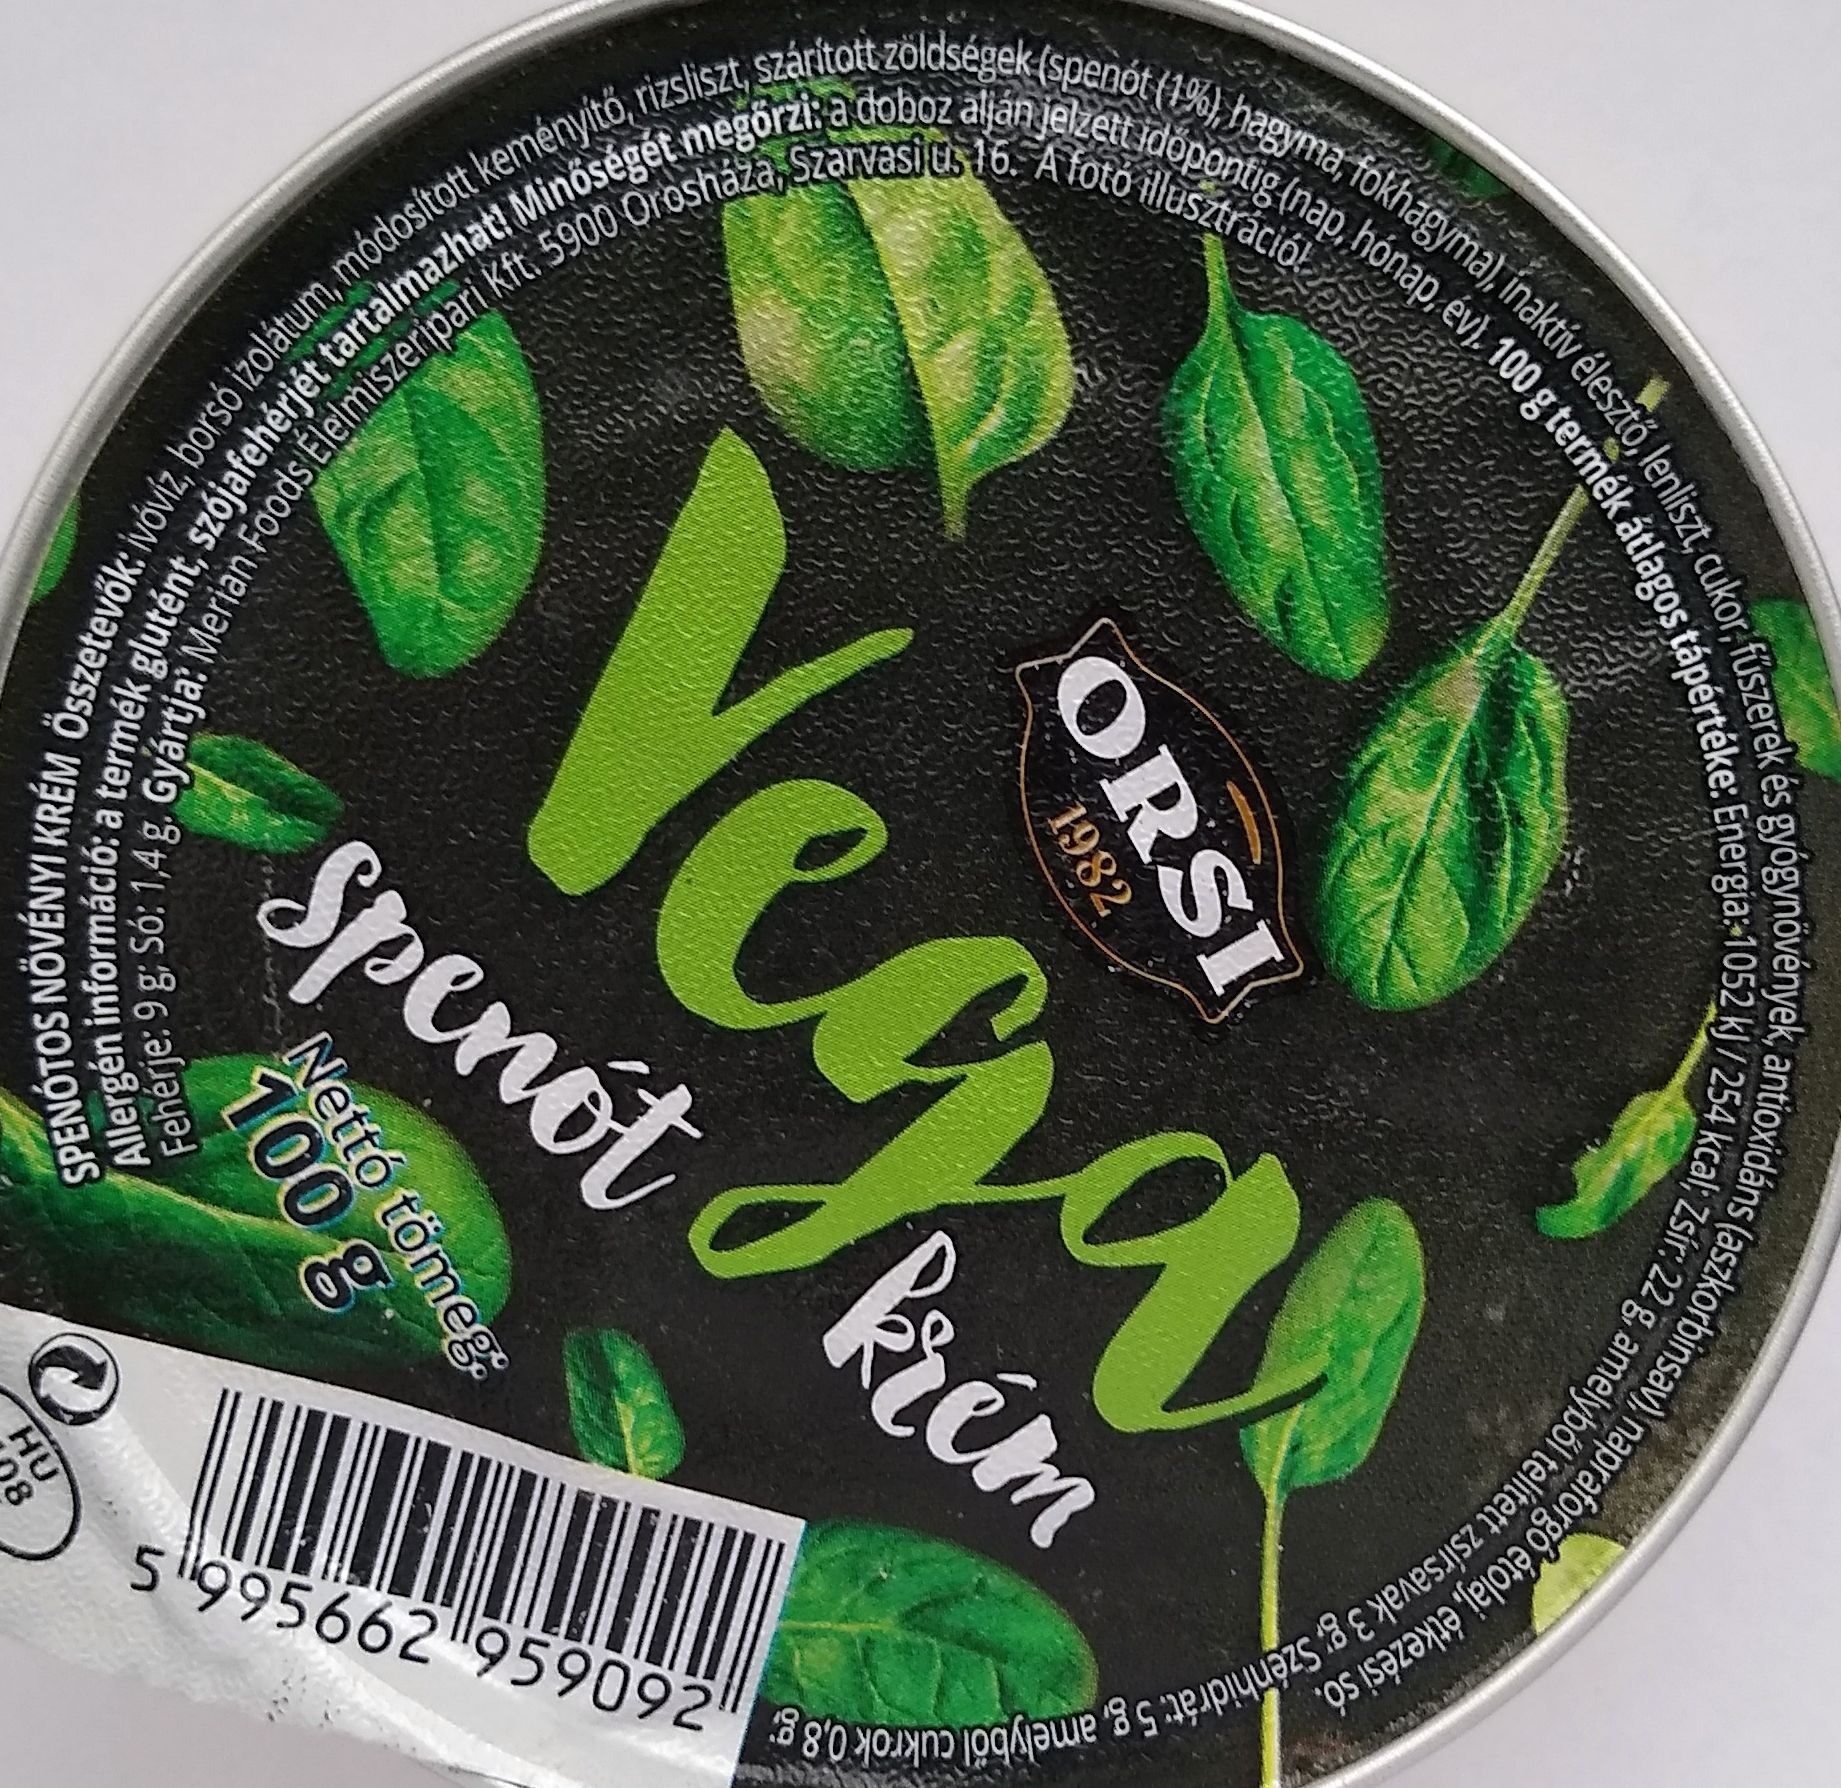 Vega spenót krém - Ingredients - hu